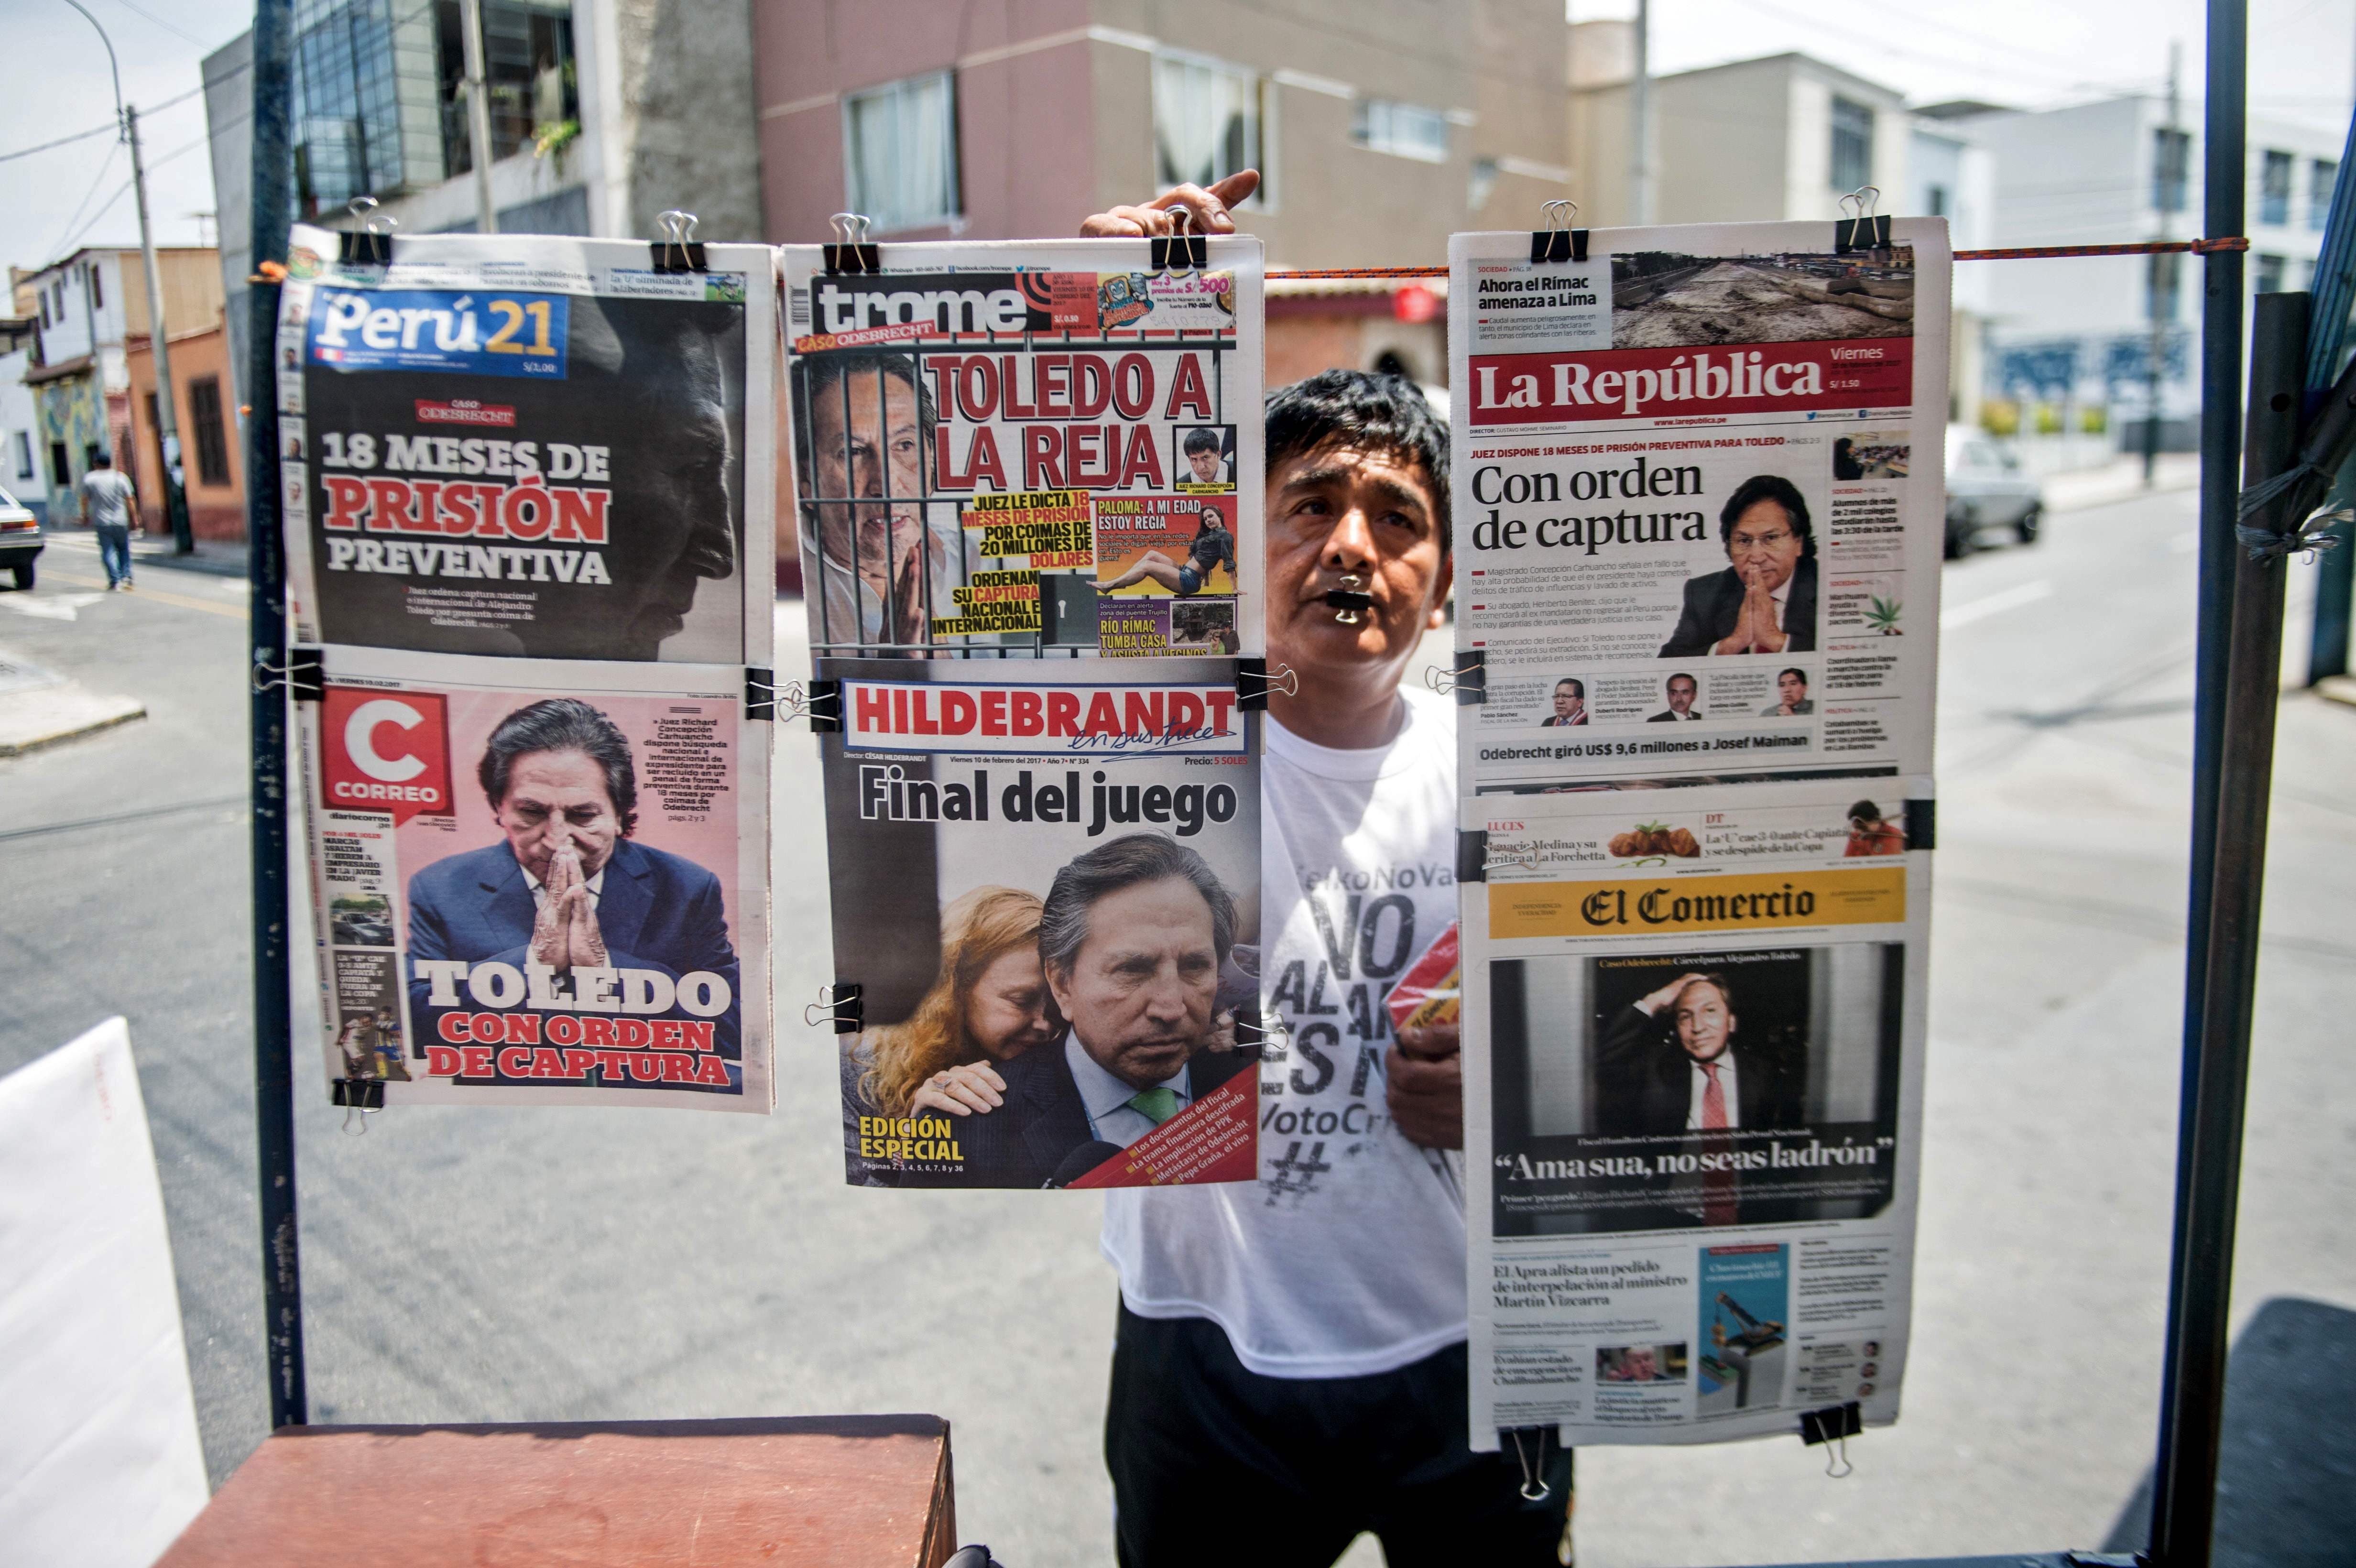 Caso Odebrecht: Perú ofrece recompensa de 30.000 dólares para capturar a expresidente Toledo